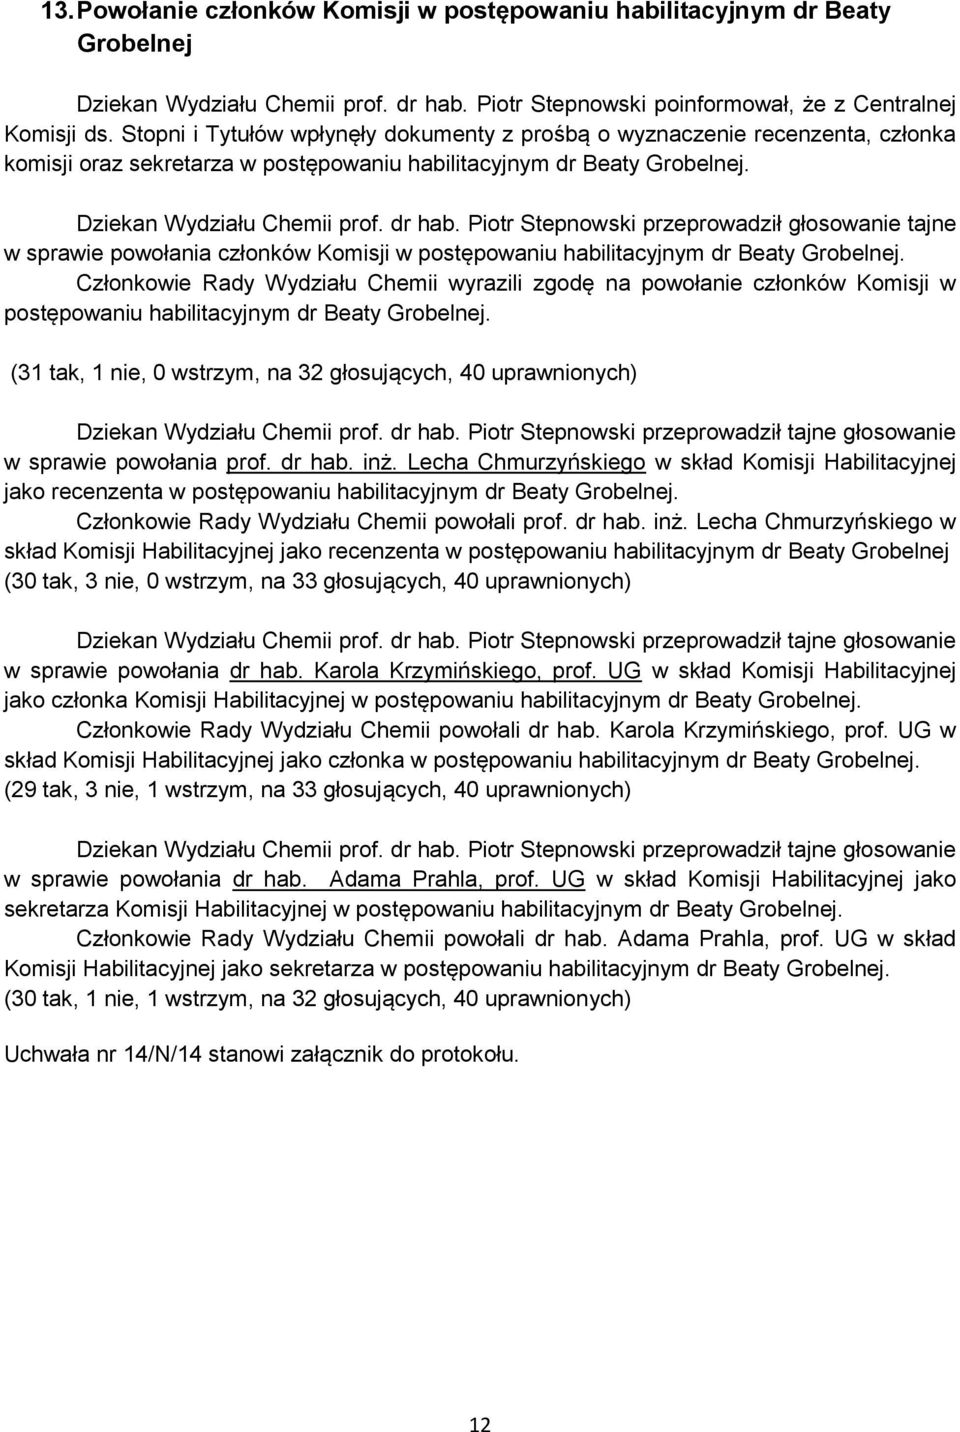 Piotr Stepnowski przeprowadził głosowanie tajne w sprawie powołania członków Komisji w postępowaniu habilitacyjnym dr Beaty Grobelnej.